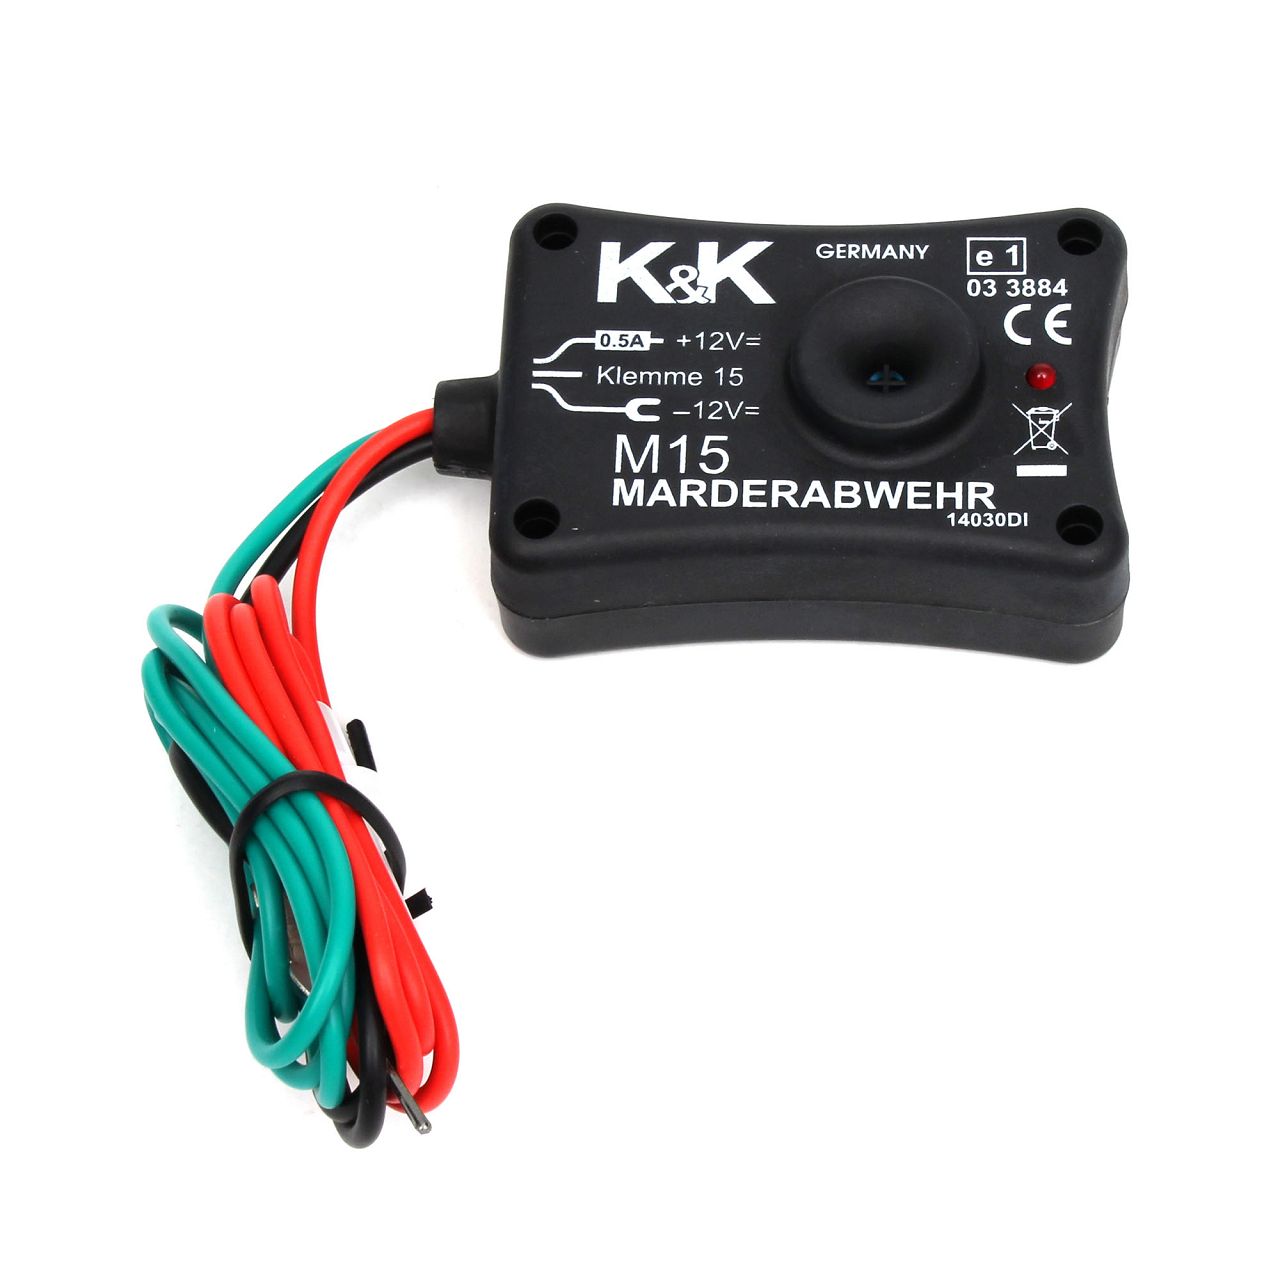 K&K Marderschutz Marderabwehr M15 Ultraschallgerät 12 kHz 85 dB(A)